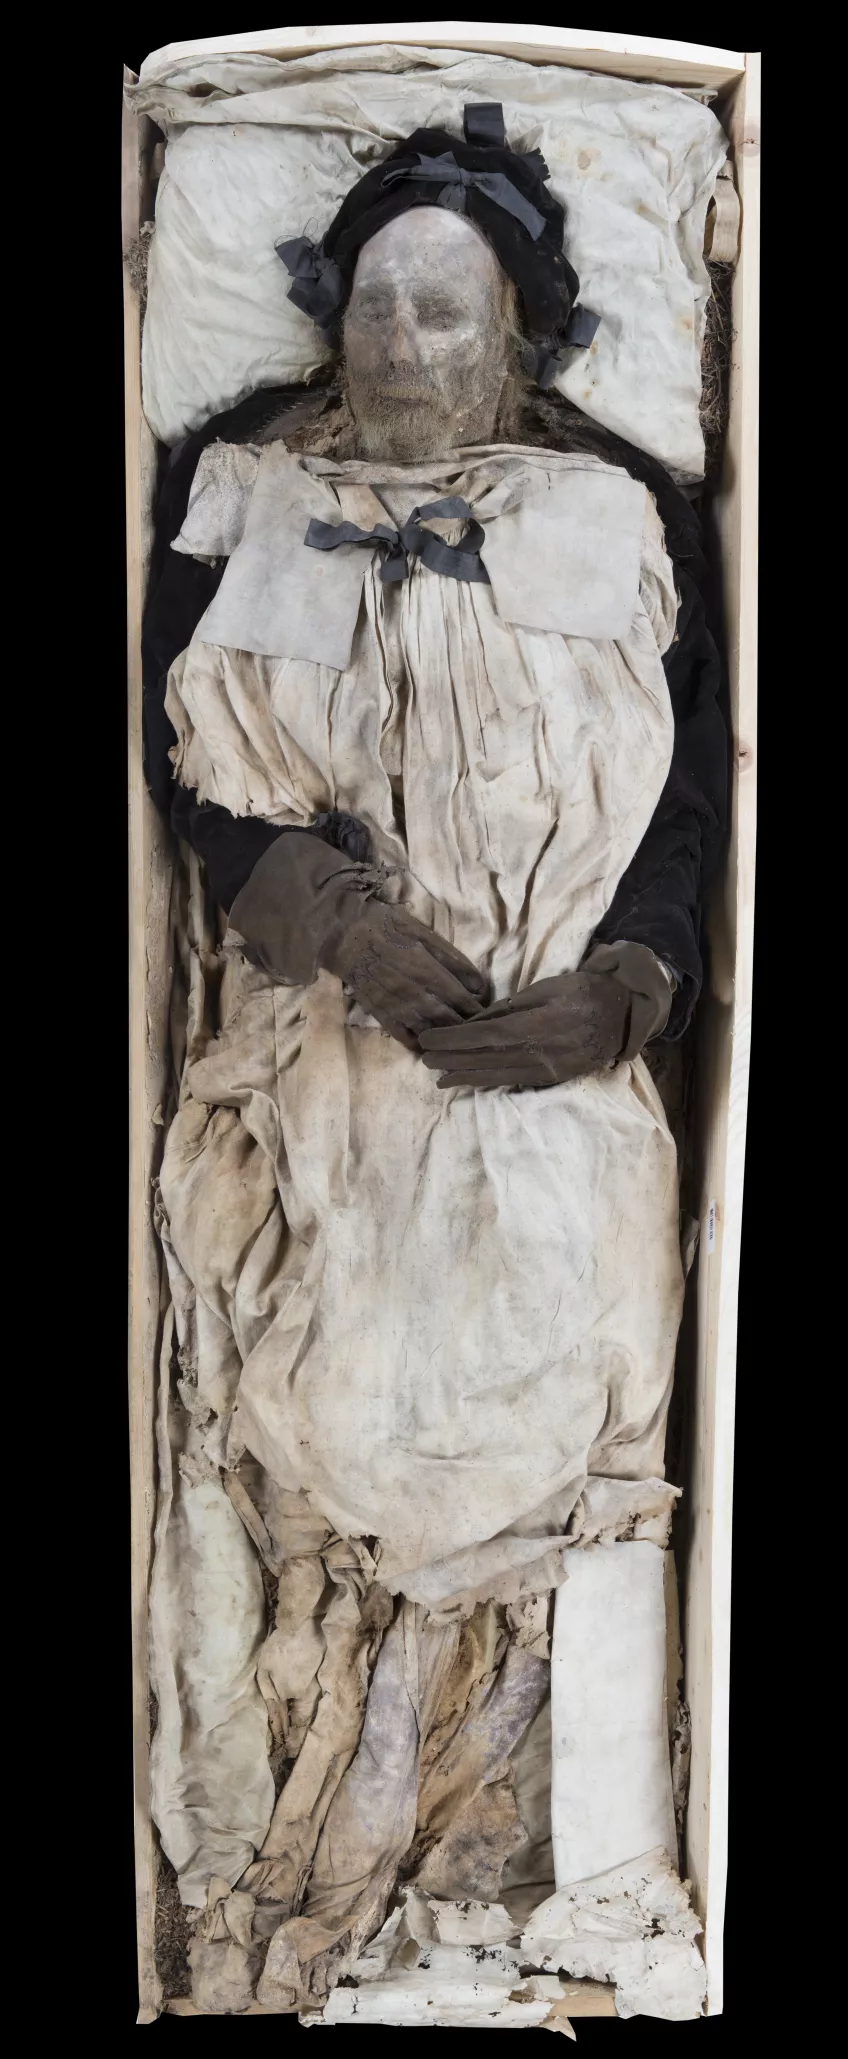 Peder Winstrup in his coffin